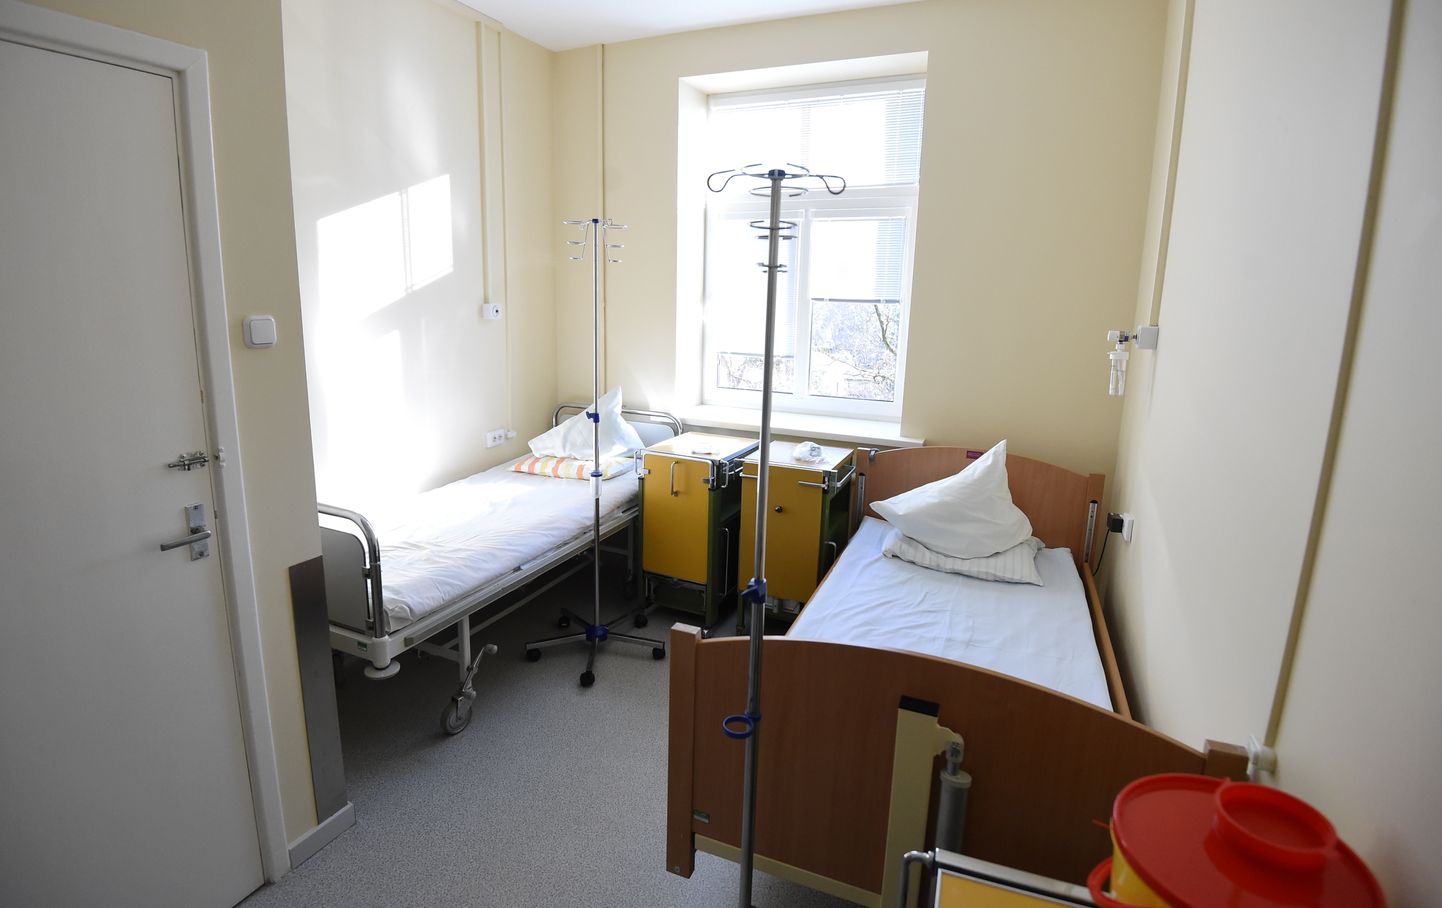 Palāta AS "Latvijas Jūras medicīnas centra" Vecmīlgrāvja slimnīcas diennakts hronisko pacientu aprūpes nodaļā, kur izvietotas gultas Covid-19 pacientiem ar vidēji smagu slimības gaitu.